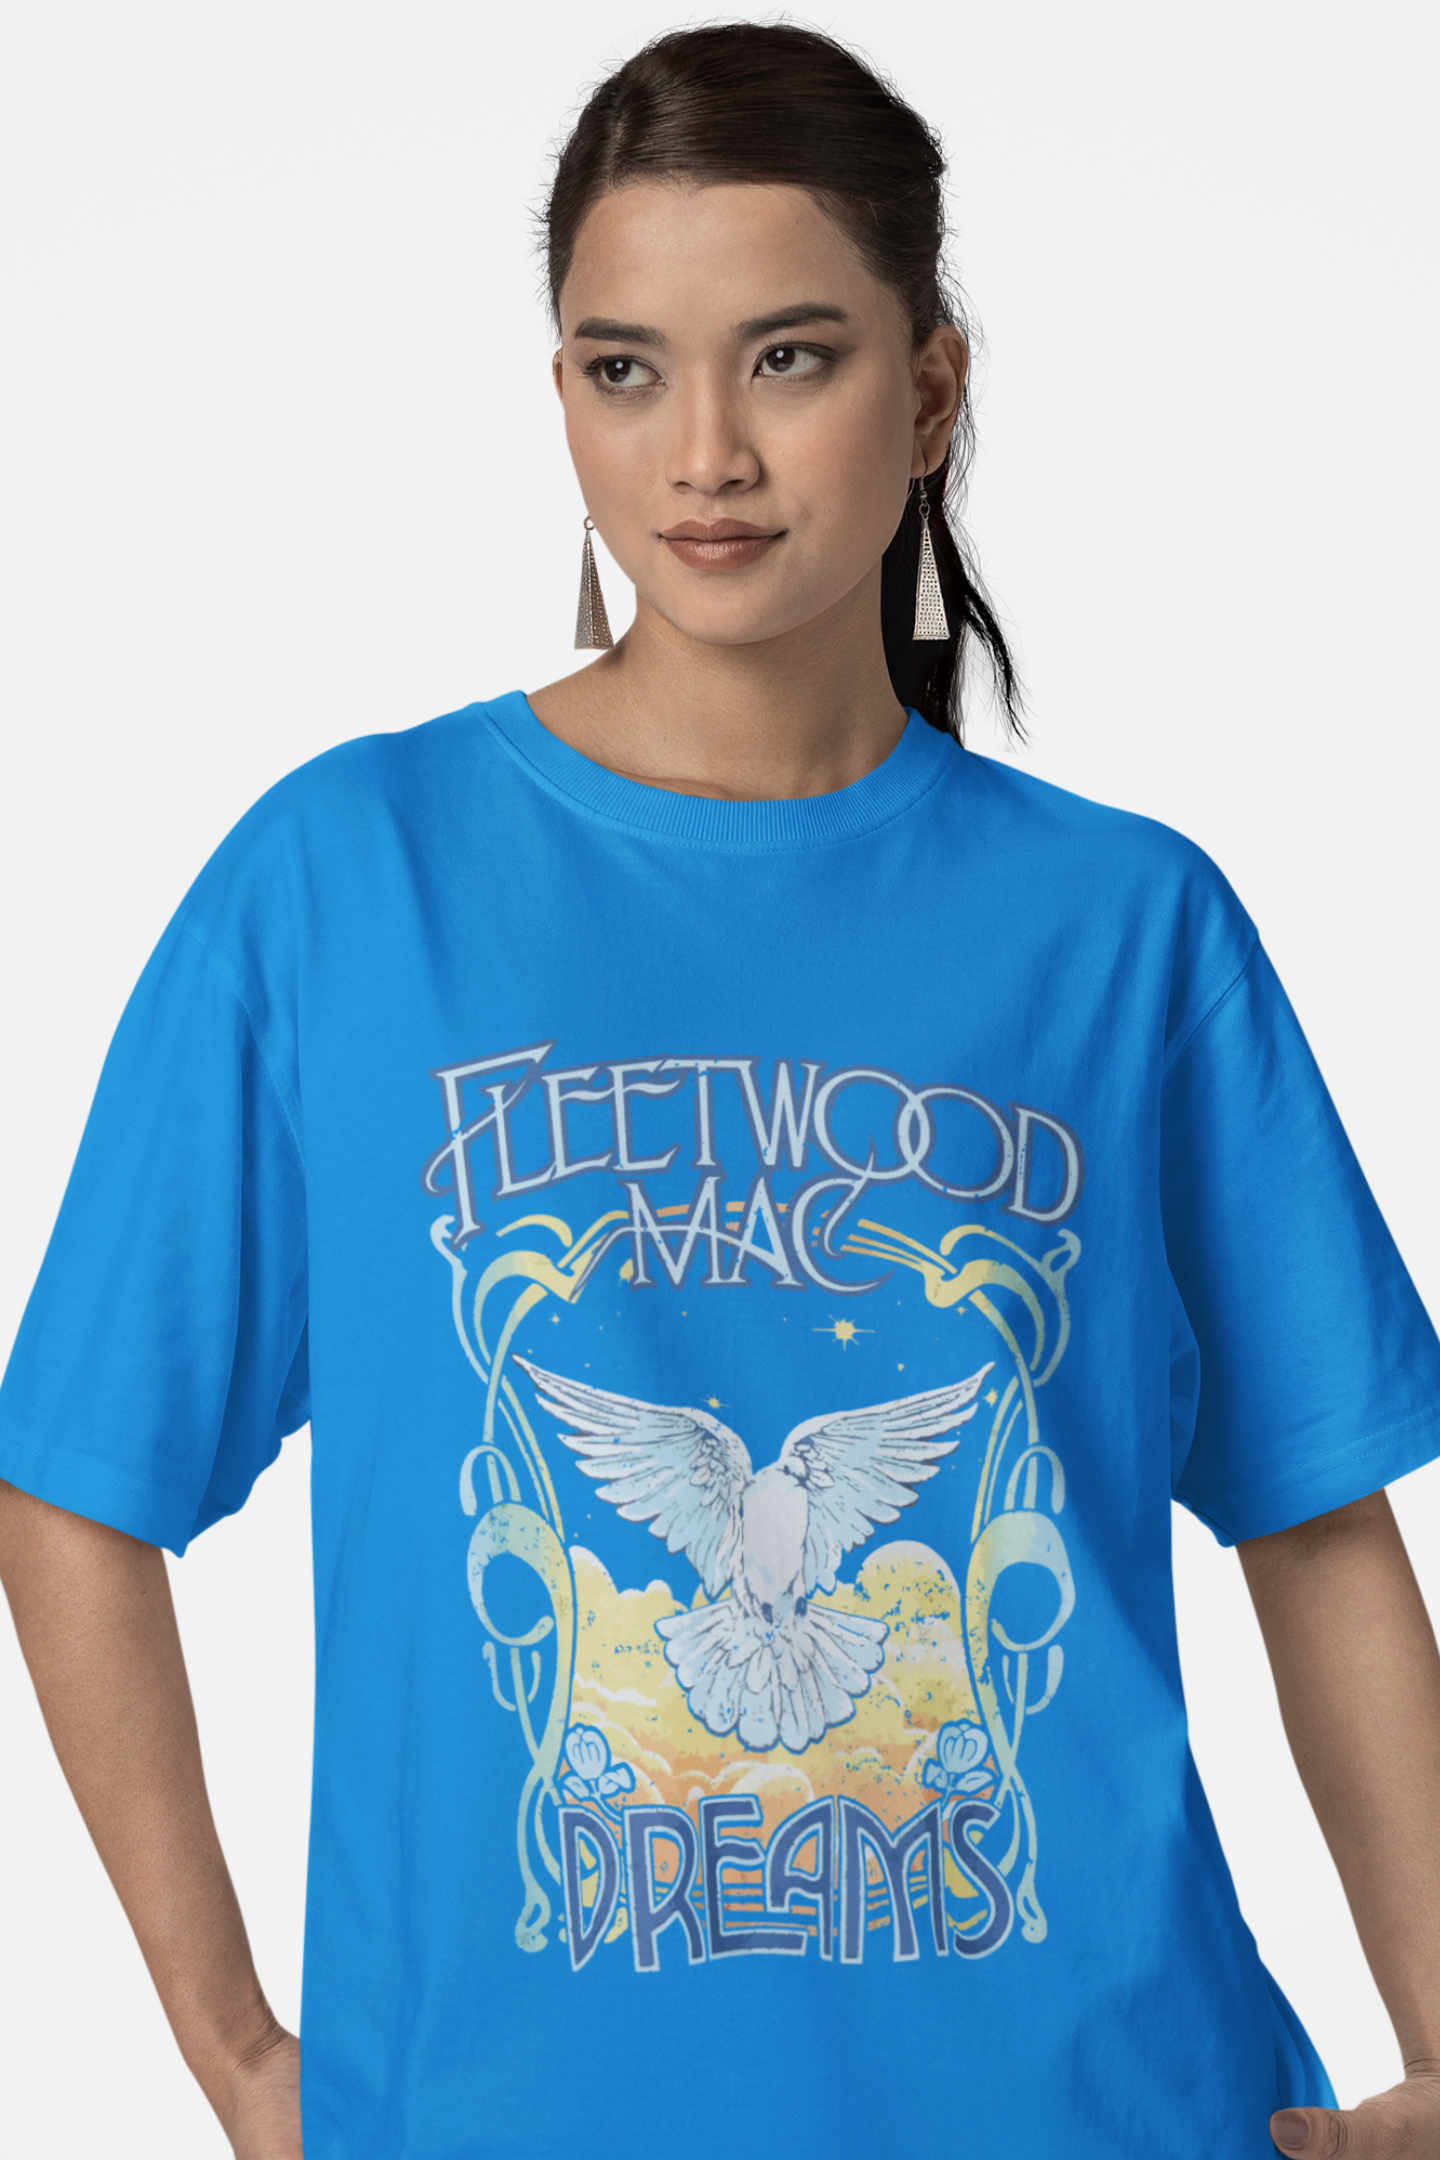 Fleetwood Mac Dreams T Shirt | Fleetwood Mac Lover | Stevie Nicks T Shirt | Stevie Nicks Fan | Fleetwood Mac Album